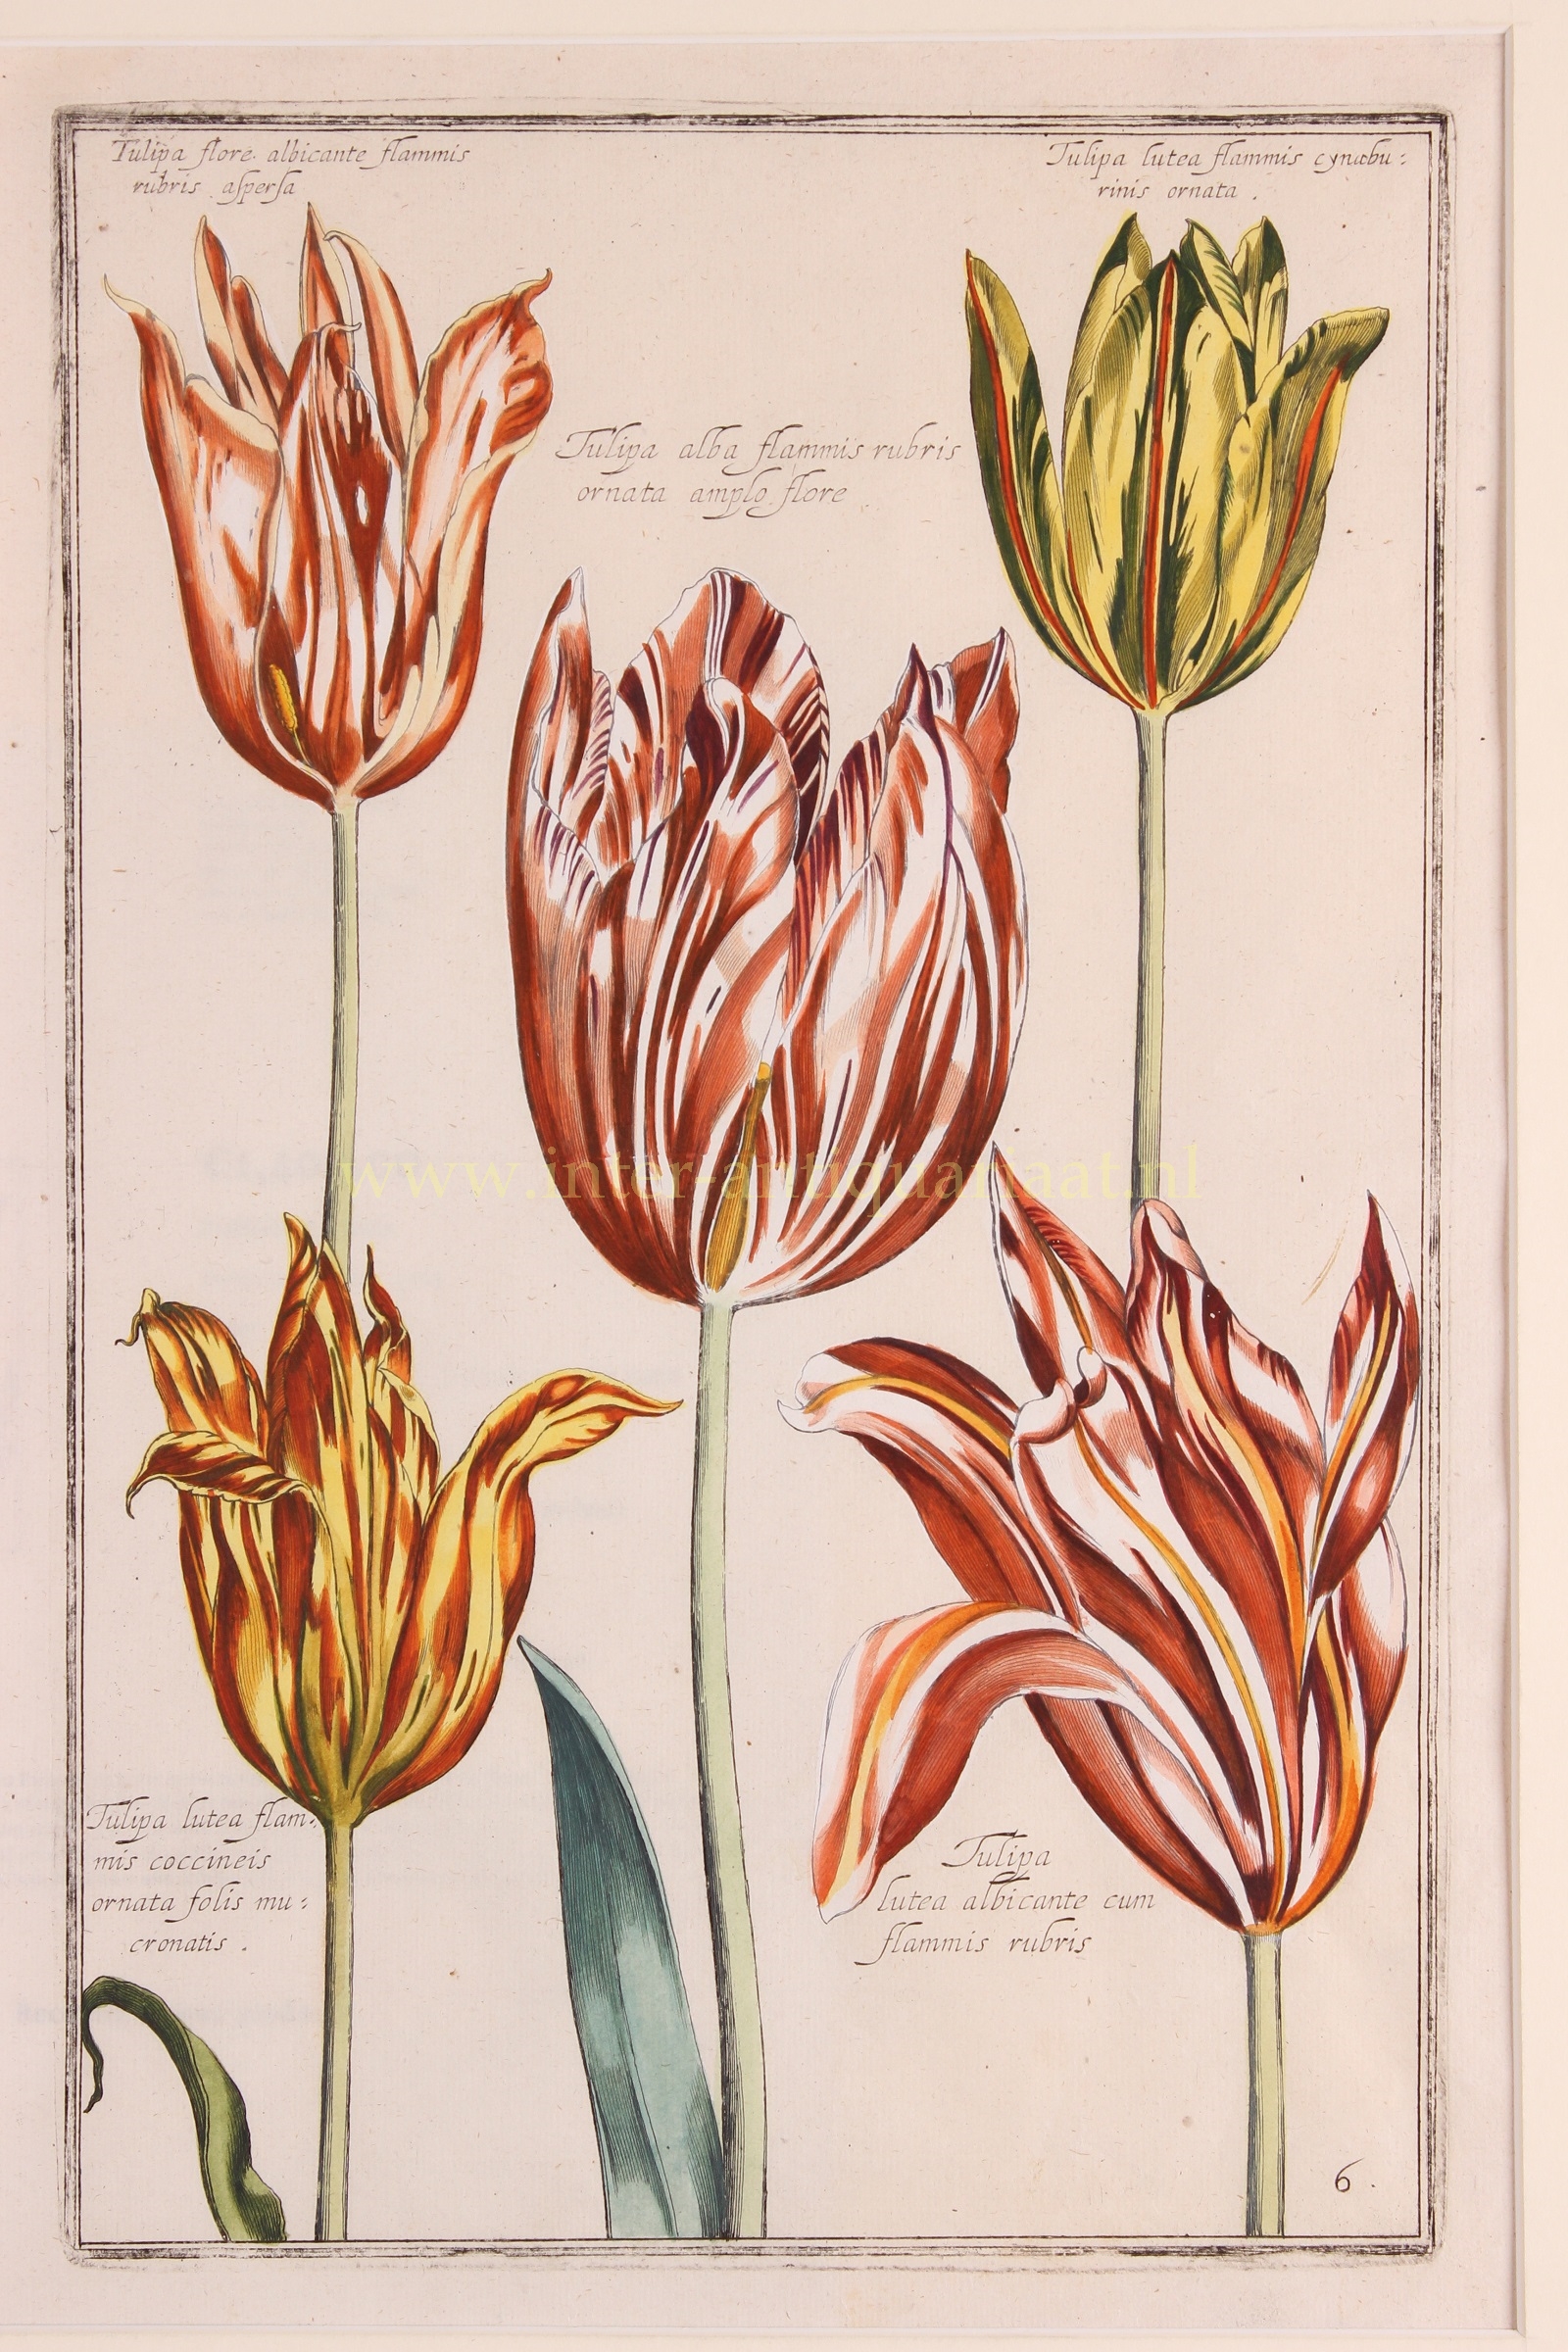 Sweert-- Emanuel (1552-1612) - Tulips- Emmanuel Sweert + Daniel Rabel, 1622-1633